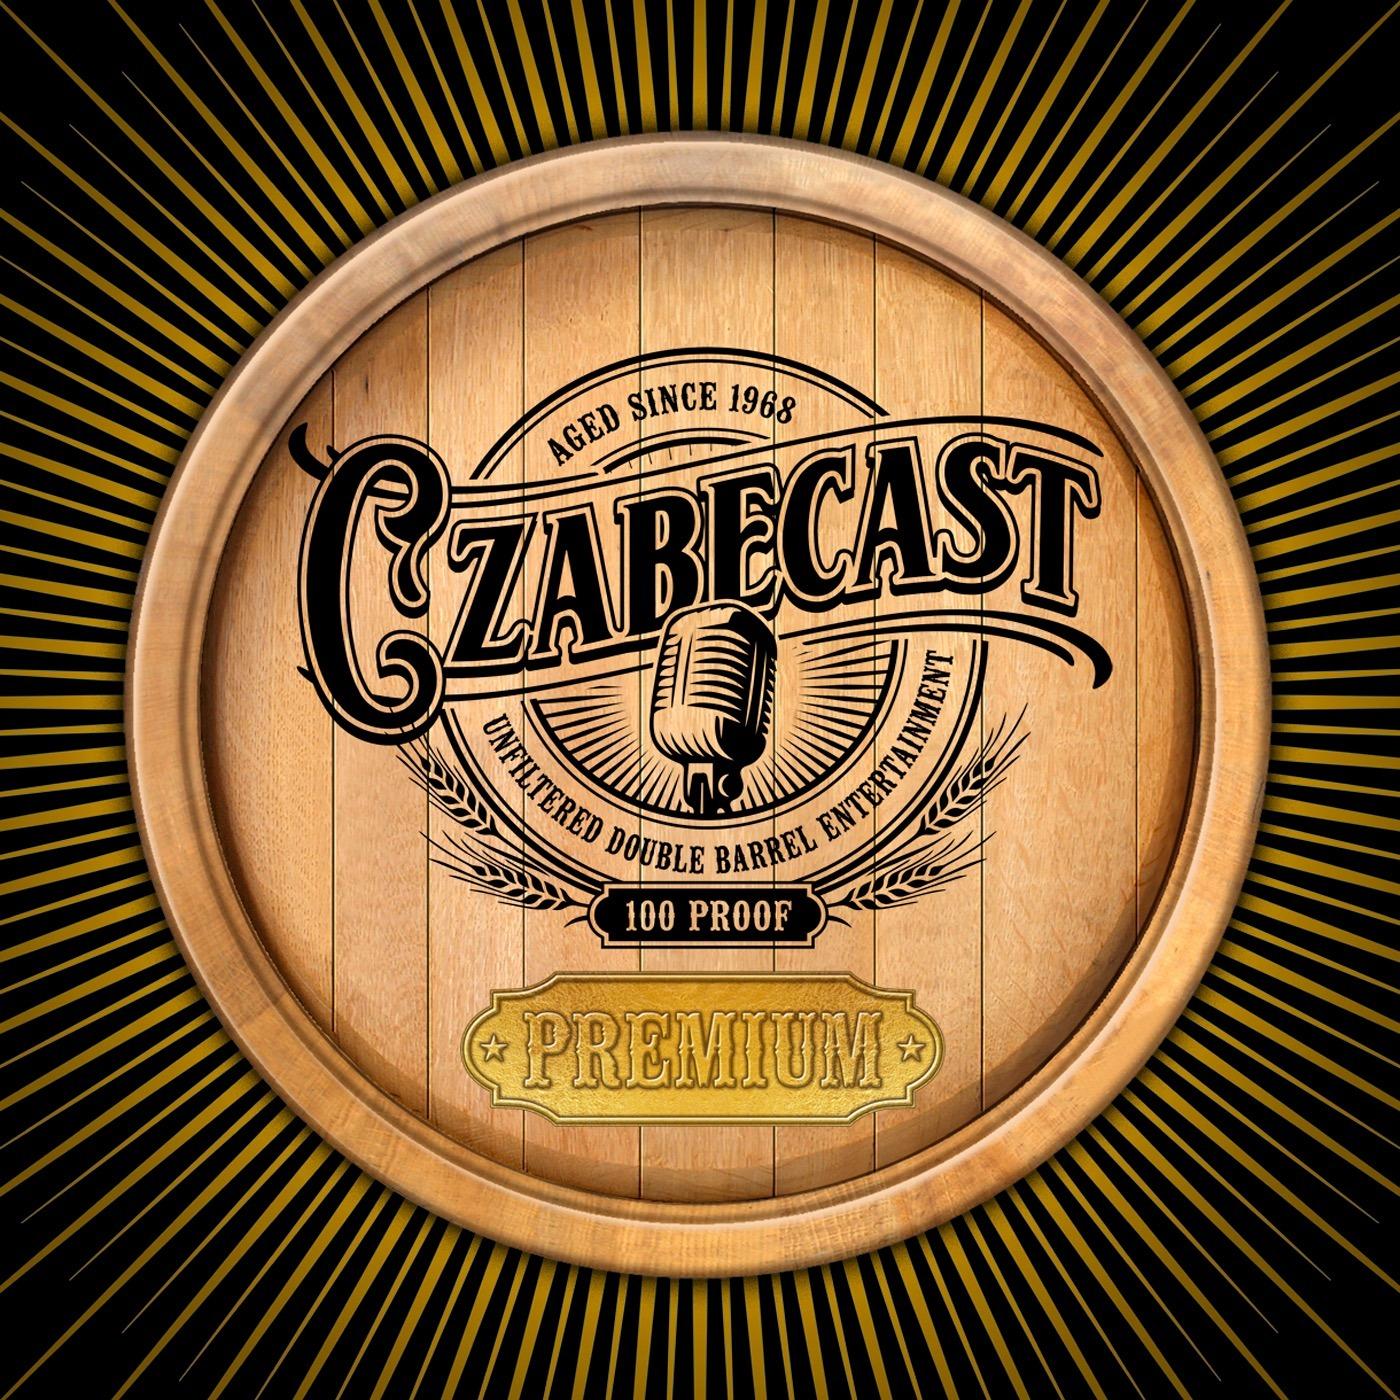 CzabeCast Premium